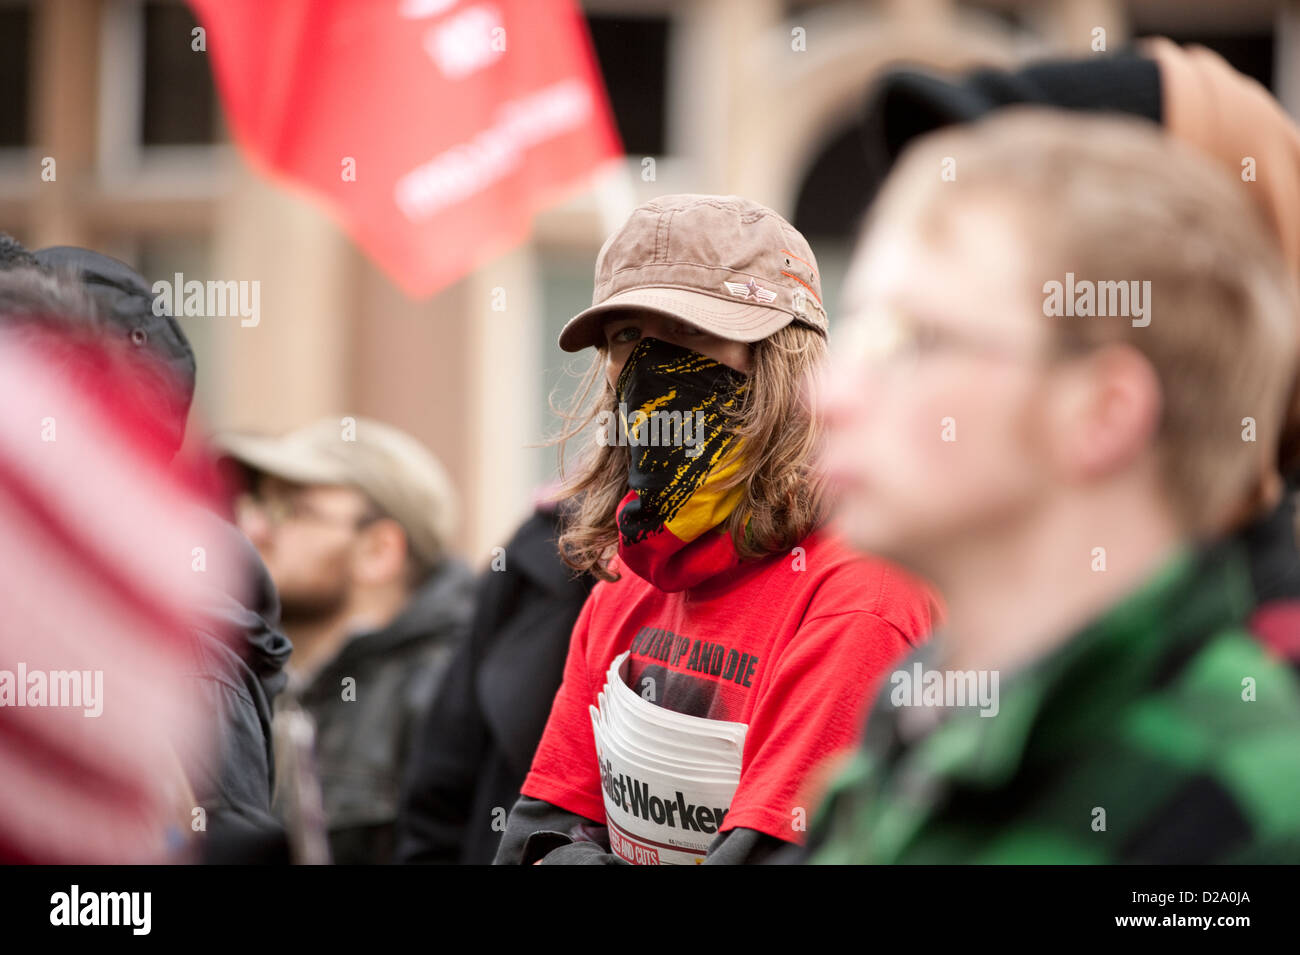 Maskierter Demonstrant mit sozialistischen Arbeiter-Zeitung Stockfoto